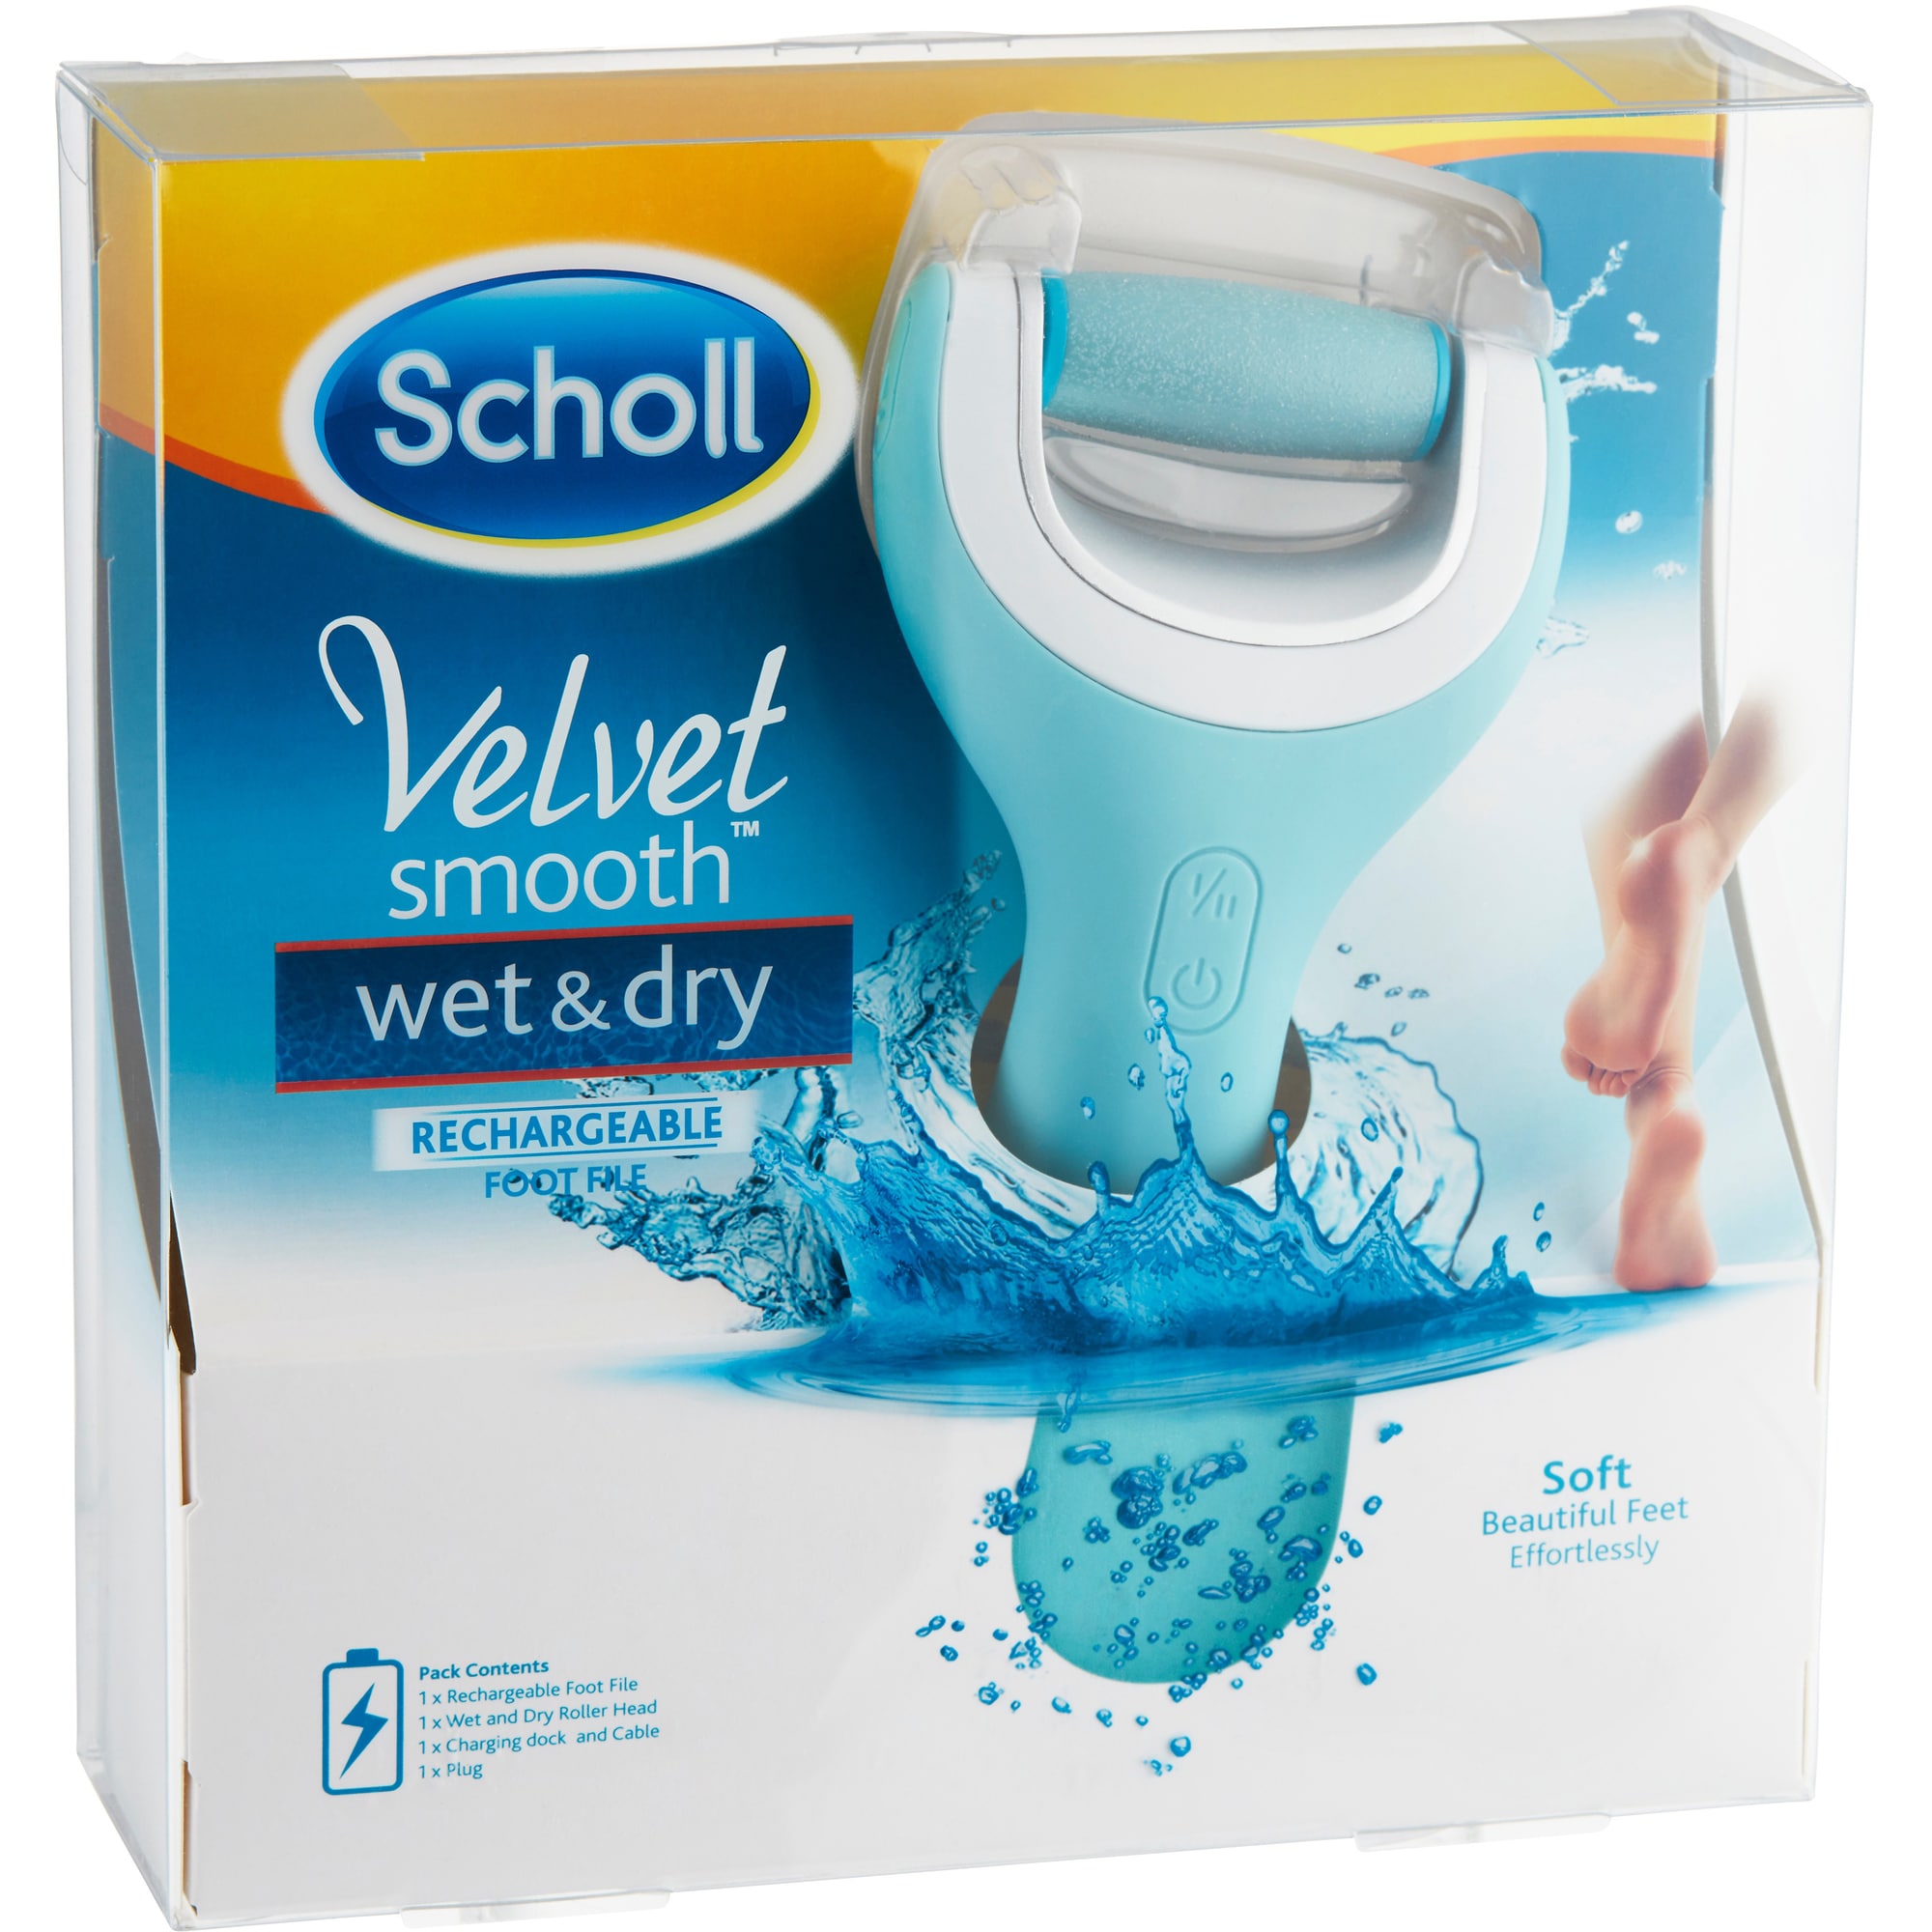 Scholl Velvet Smooth Pedi Wet & Dry jalkahöylä - Gigantti verkkokauppa